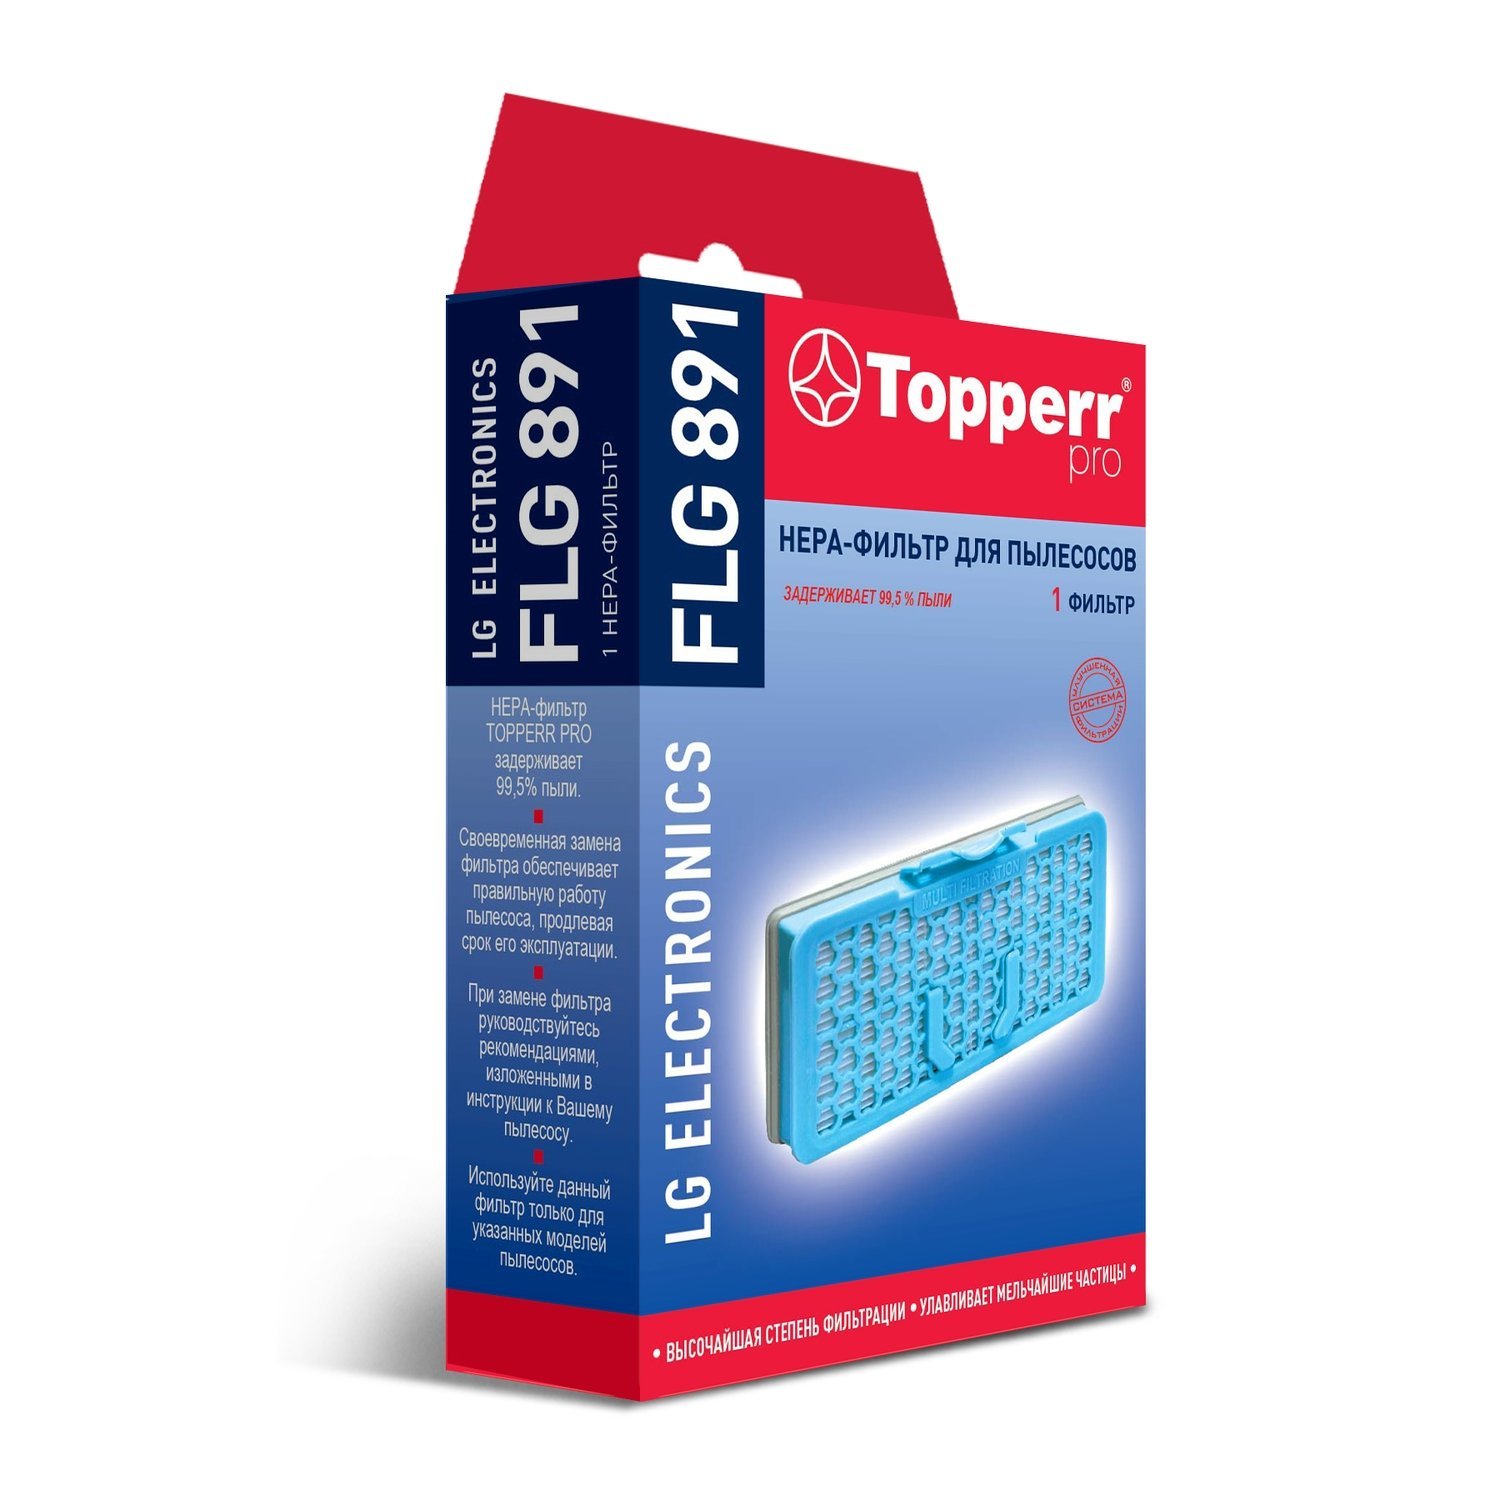 НЕРА-фильтр Topperr FLG 891 topperr hepa фильтр flg 891 1 шт